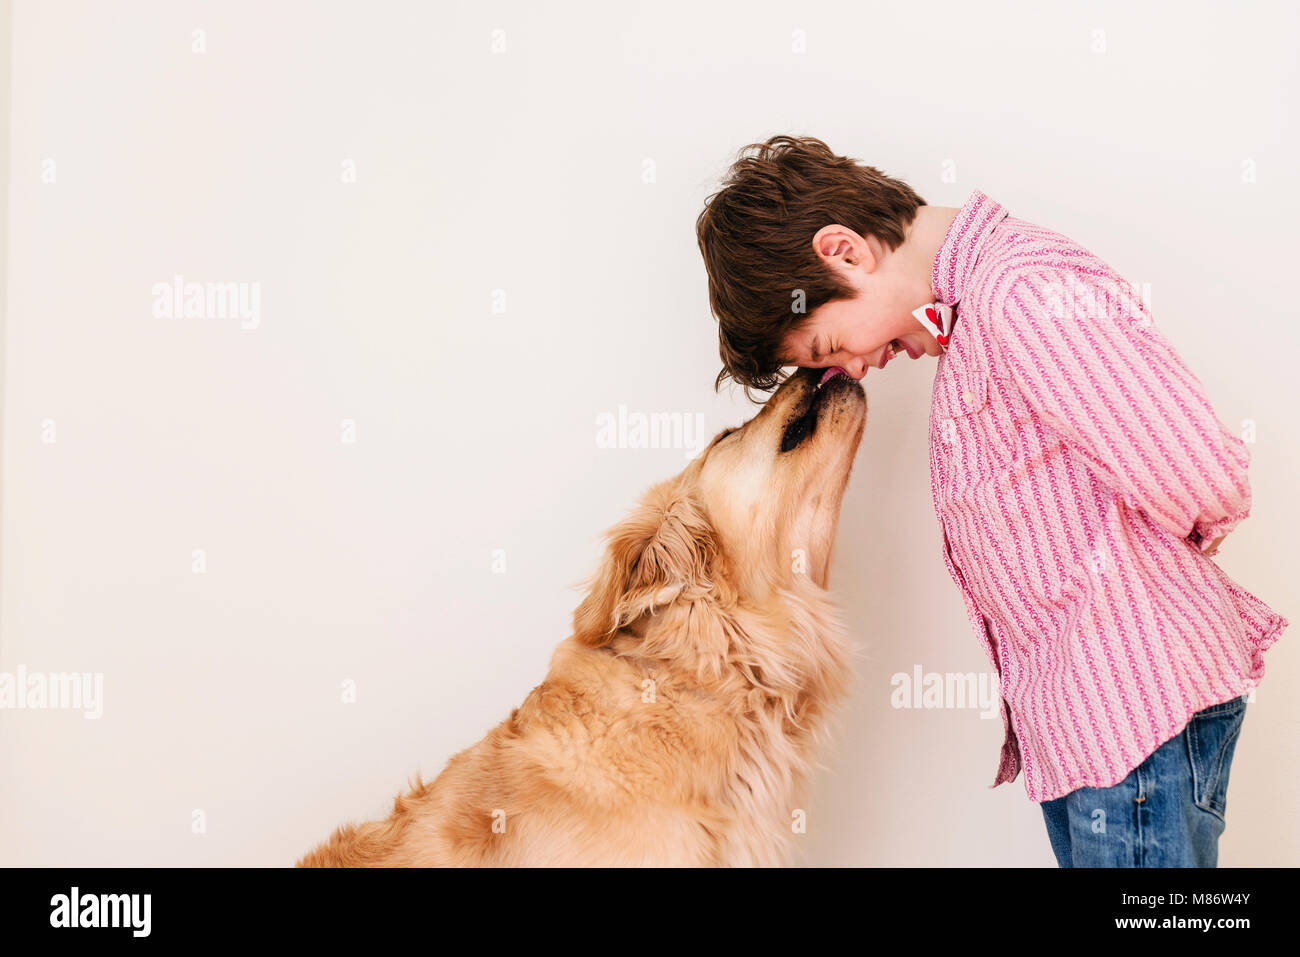 Golden retriever dog licking a boy's face Stock Photo